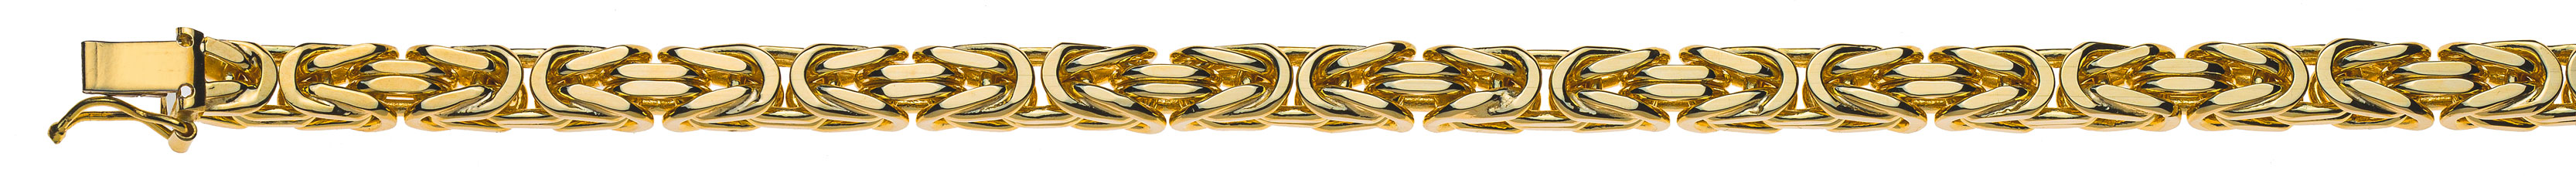 AURONOS Prestige Collier en or jaune 18K chaîne royale 55cm 5mm